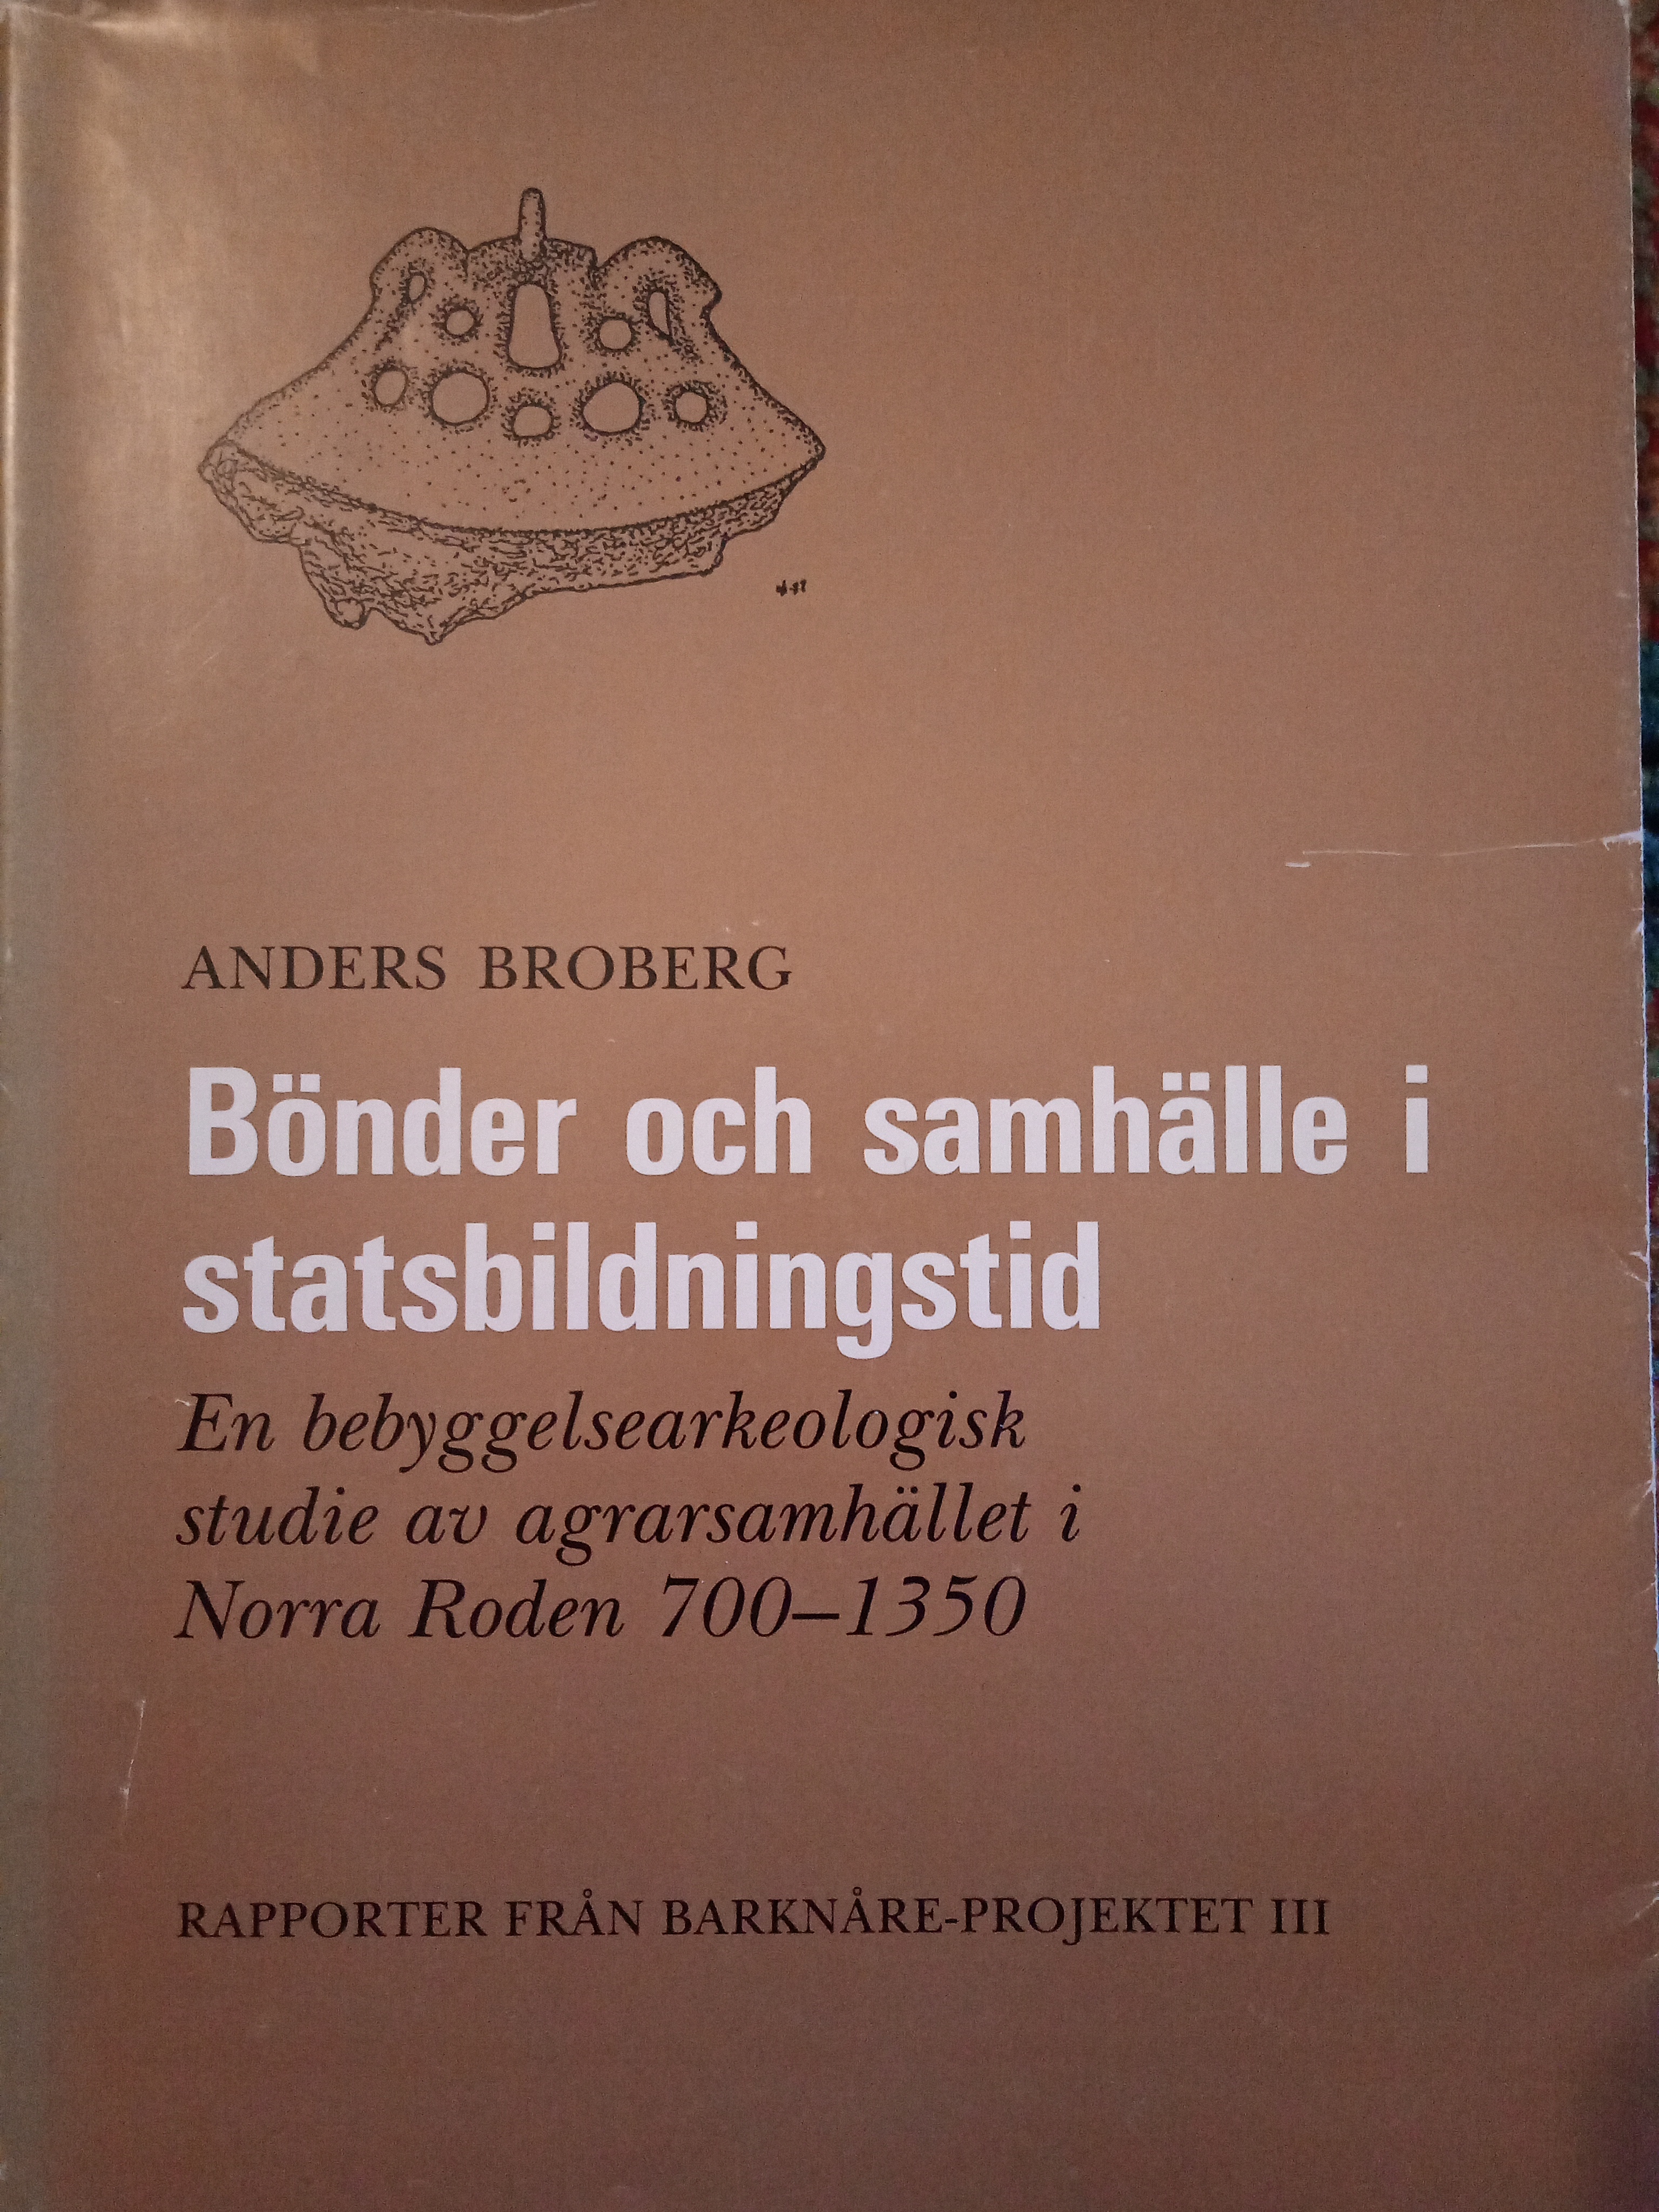 Bönder och samhälle i statsbildningstid : en bebyggelsearkeologisk studie av agrarsamhället i Norra Roden 700-1350; Anders Broberg; 1990